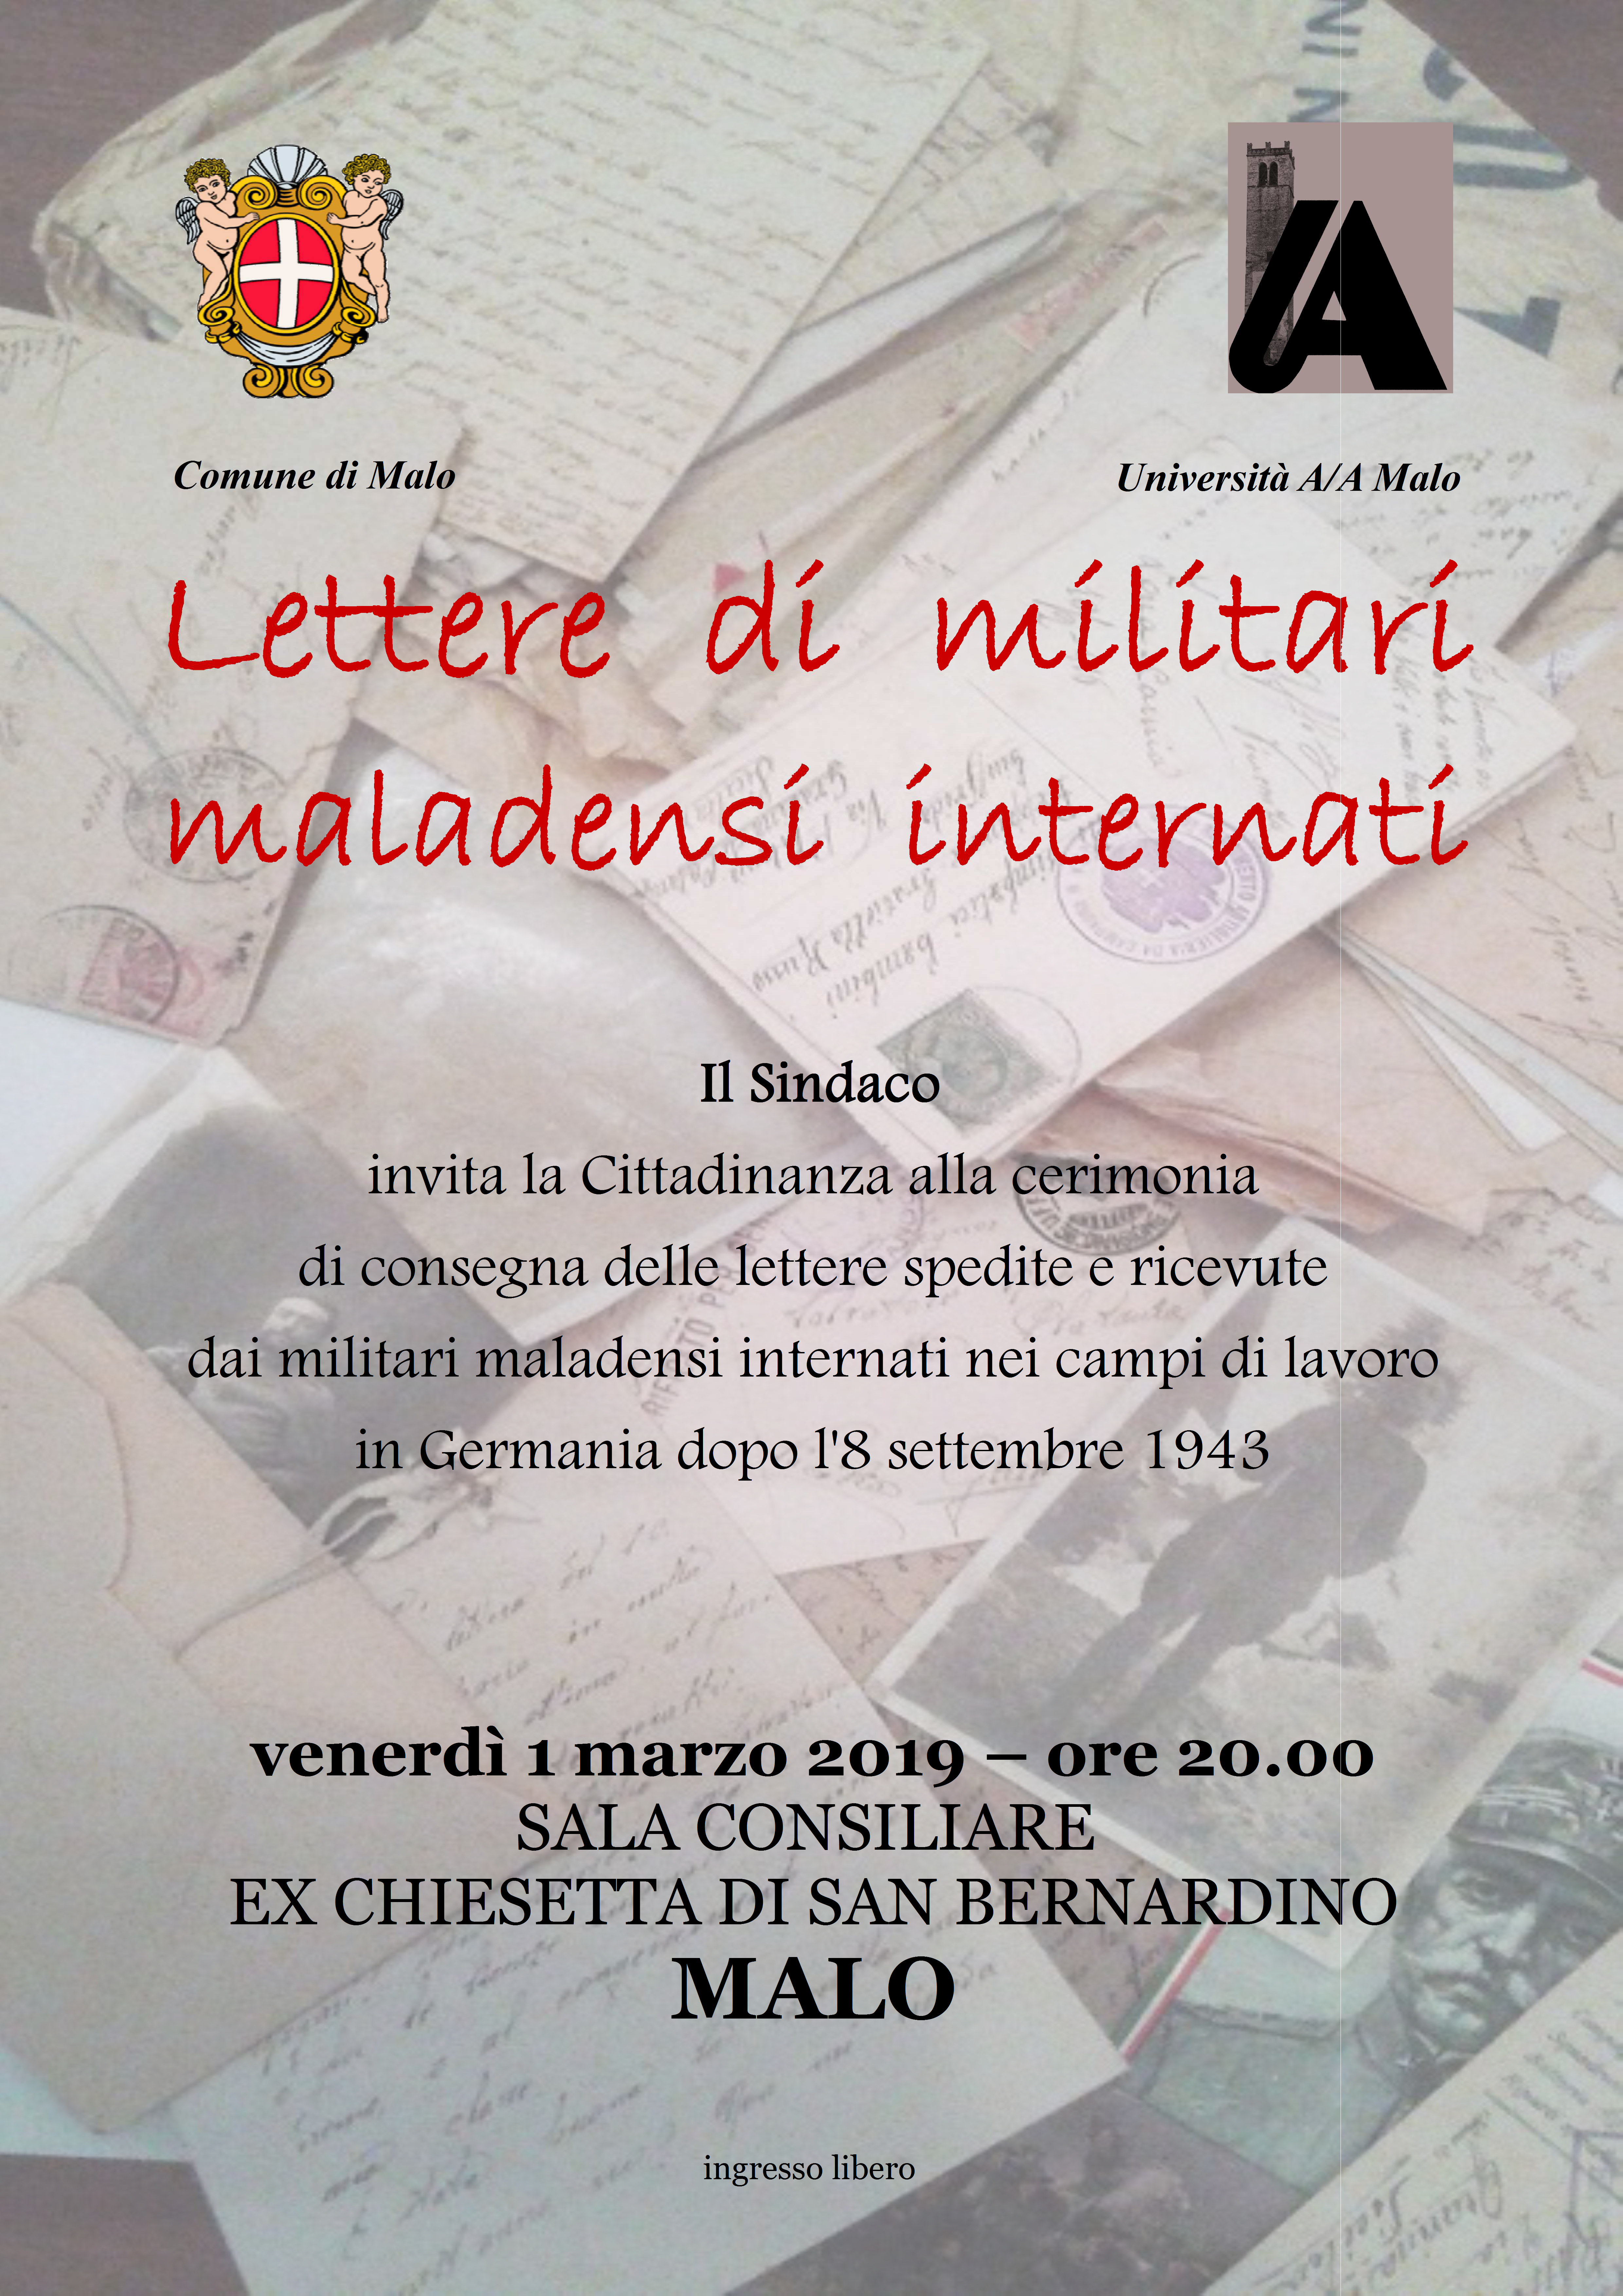 Lettere di militari maladensi internati. Cerimonia di consegna